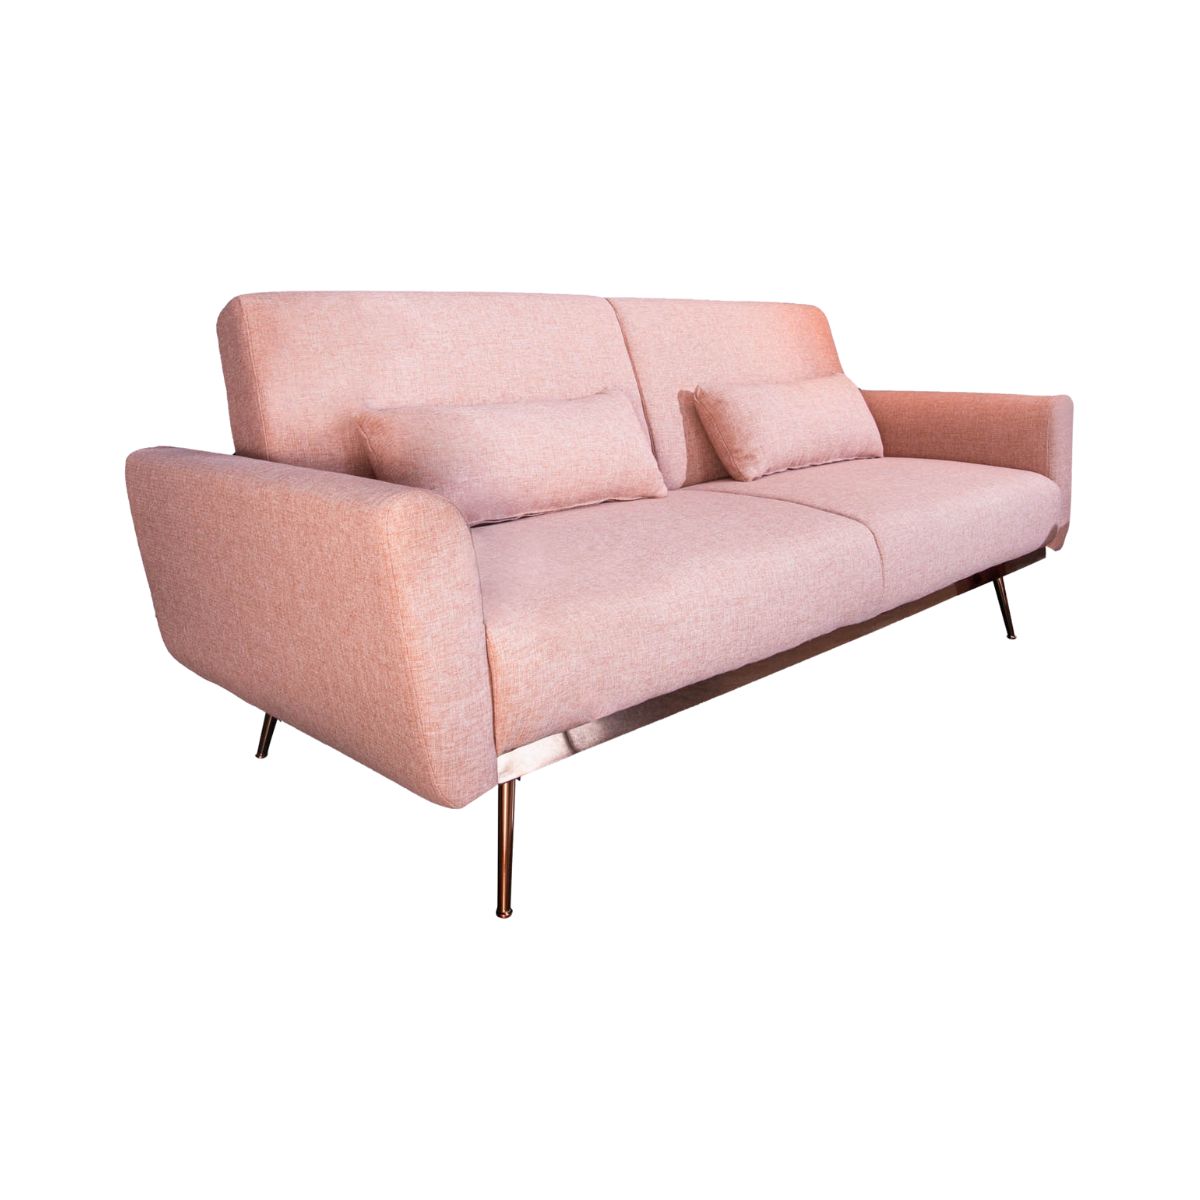 Mobilier interior - Canapea extensibila roz pal 210cm Bellezza Invicta, hectarul.ro